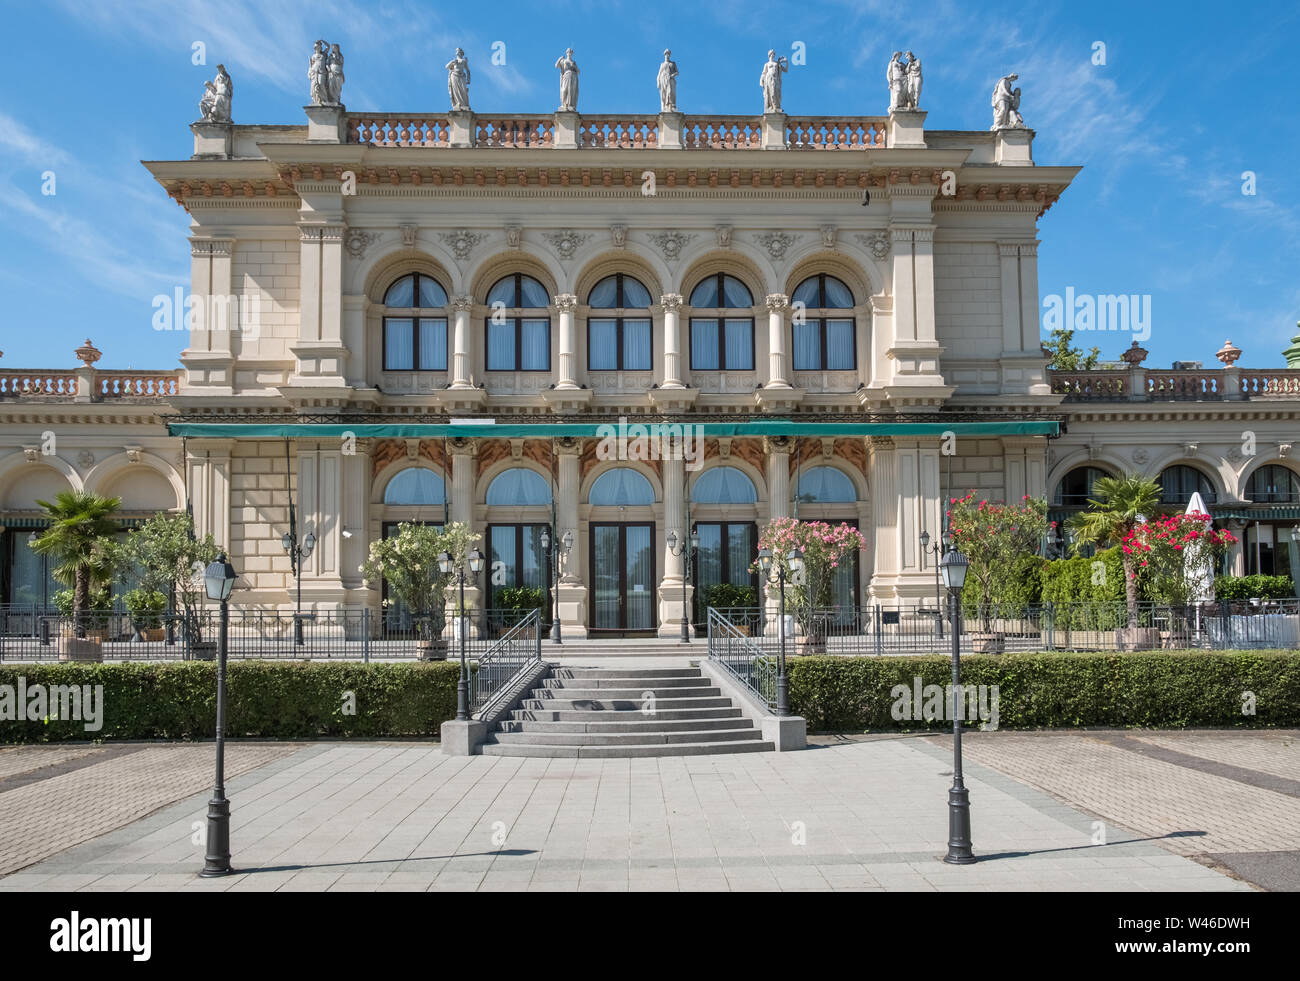 Die Außenseite des Kursalon, einem Gebäude aus dem 19. Jahrhundert im Stil der italienischen Renaissance Konzert- und Veranstaltungszentrum, Stadtpark, Wien, Österreich. Stockfoto